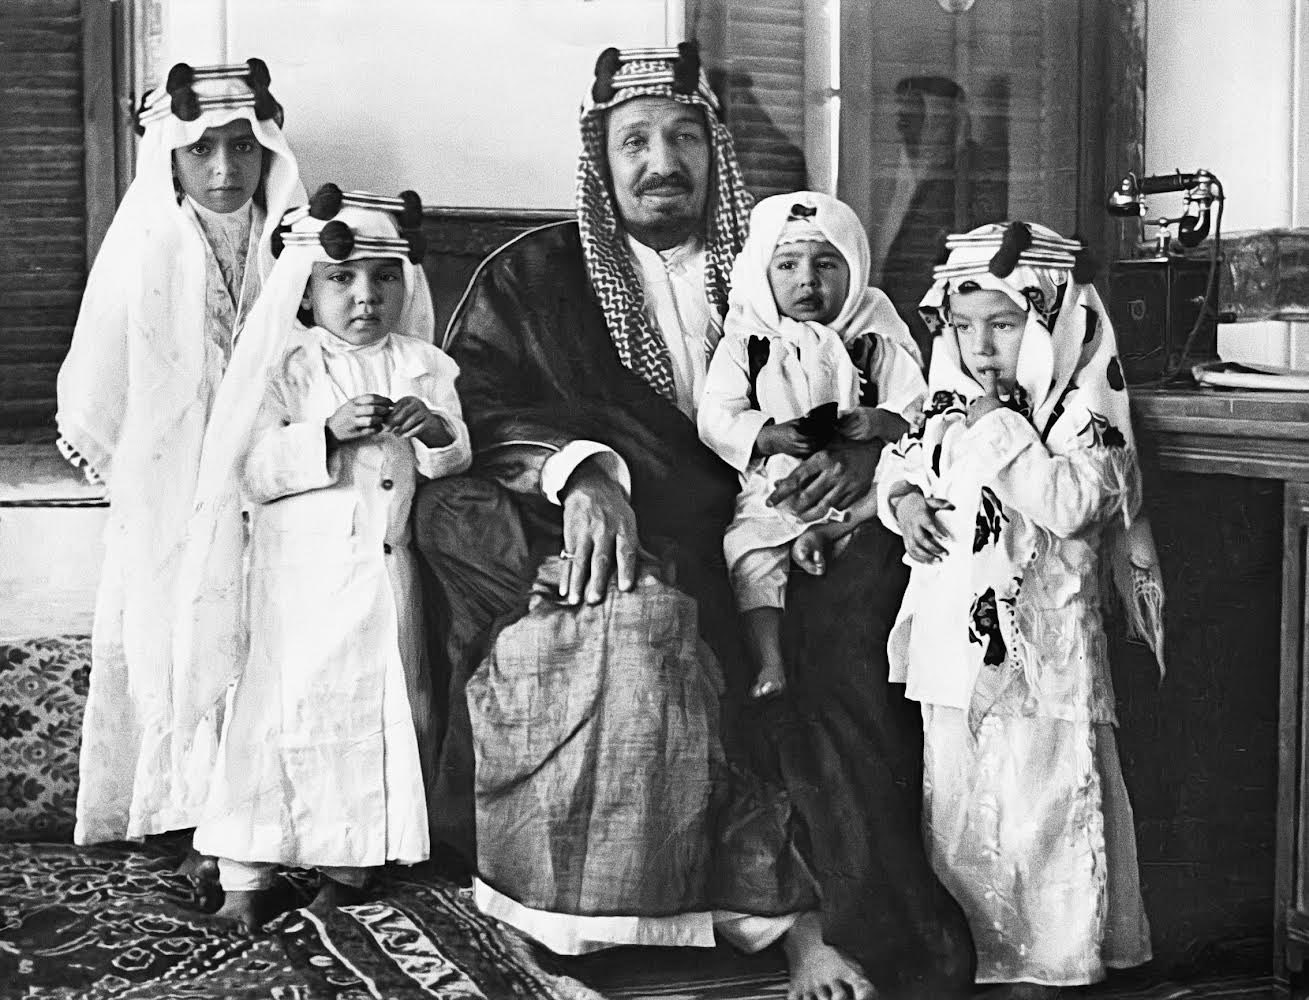 شاهد : صورة نادرة للملك عبدالعزيز مع 4 أمراء في عمر الطفولة .. والكشف عن أسمائهم وتاريخ التقاطها